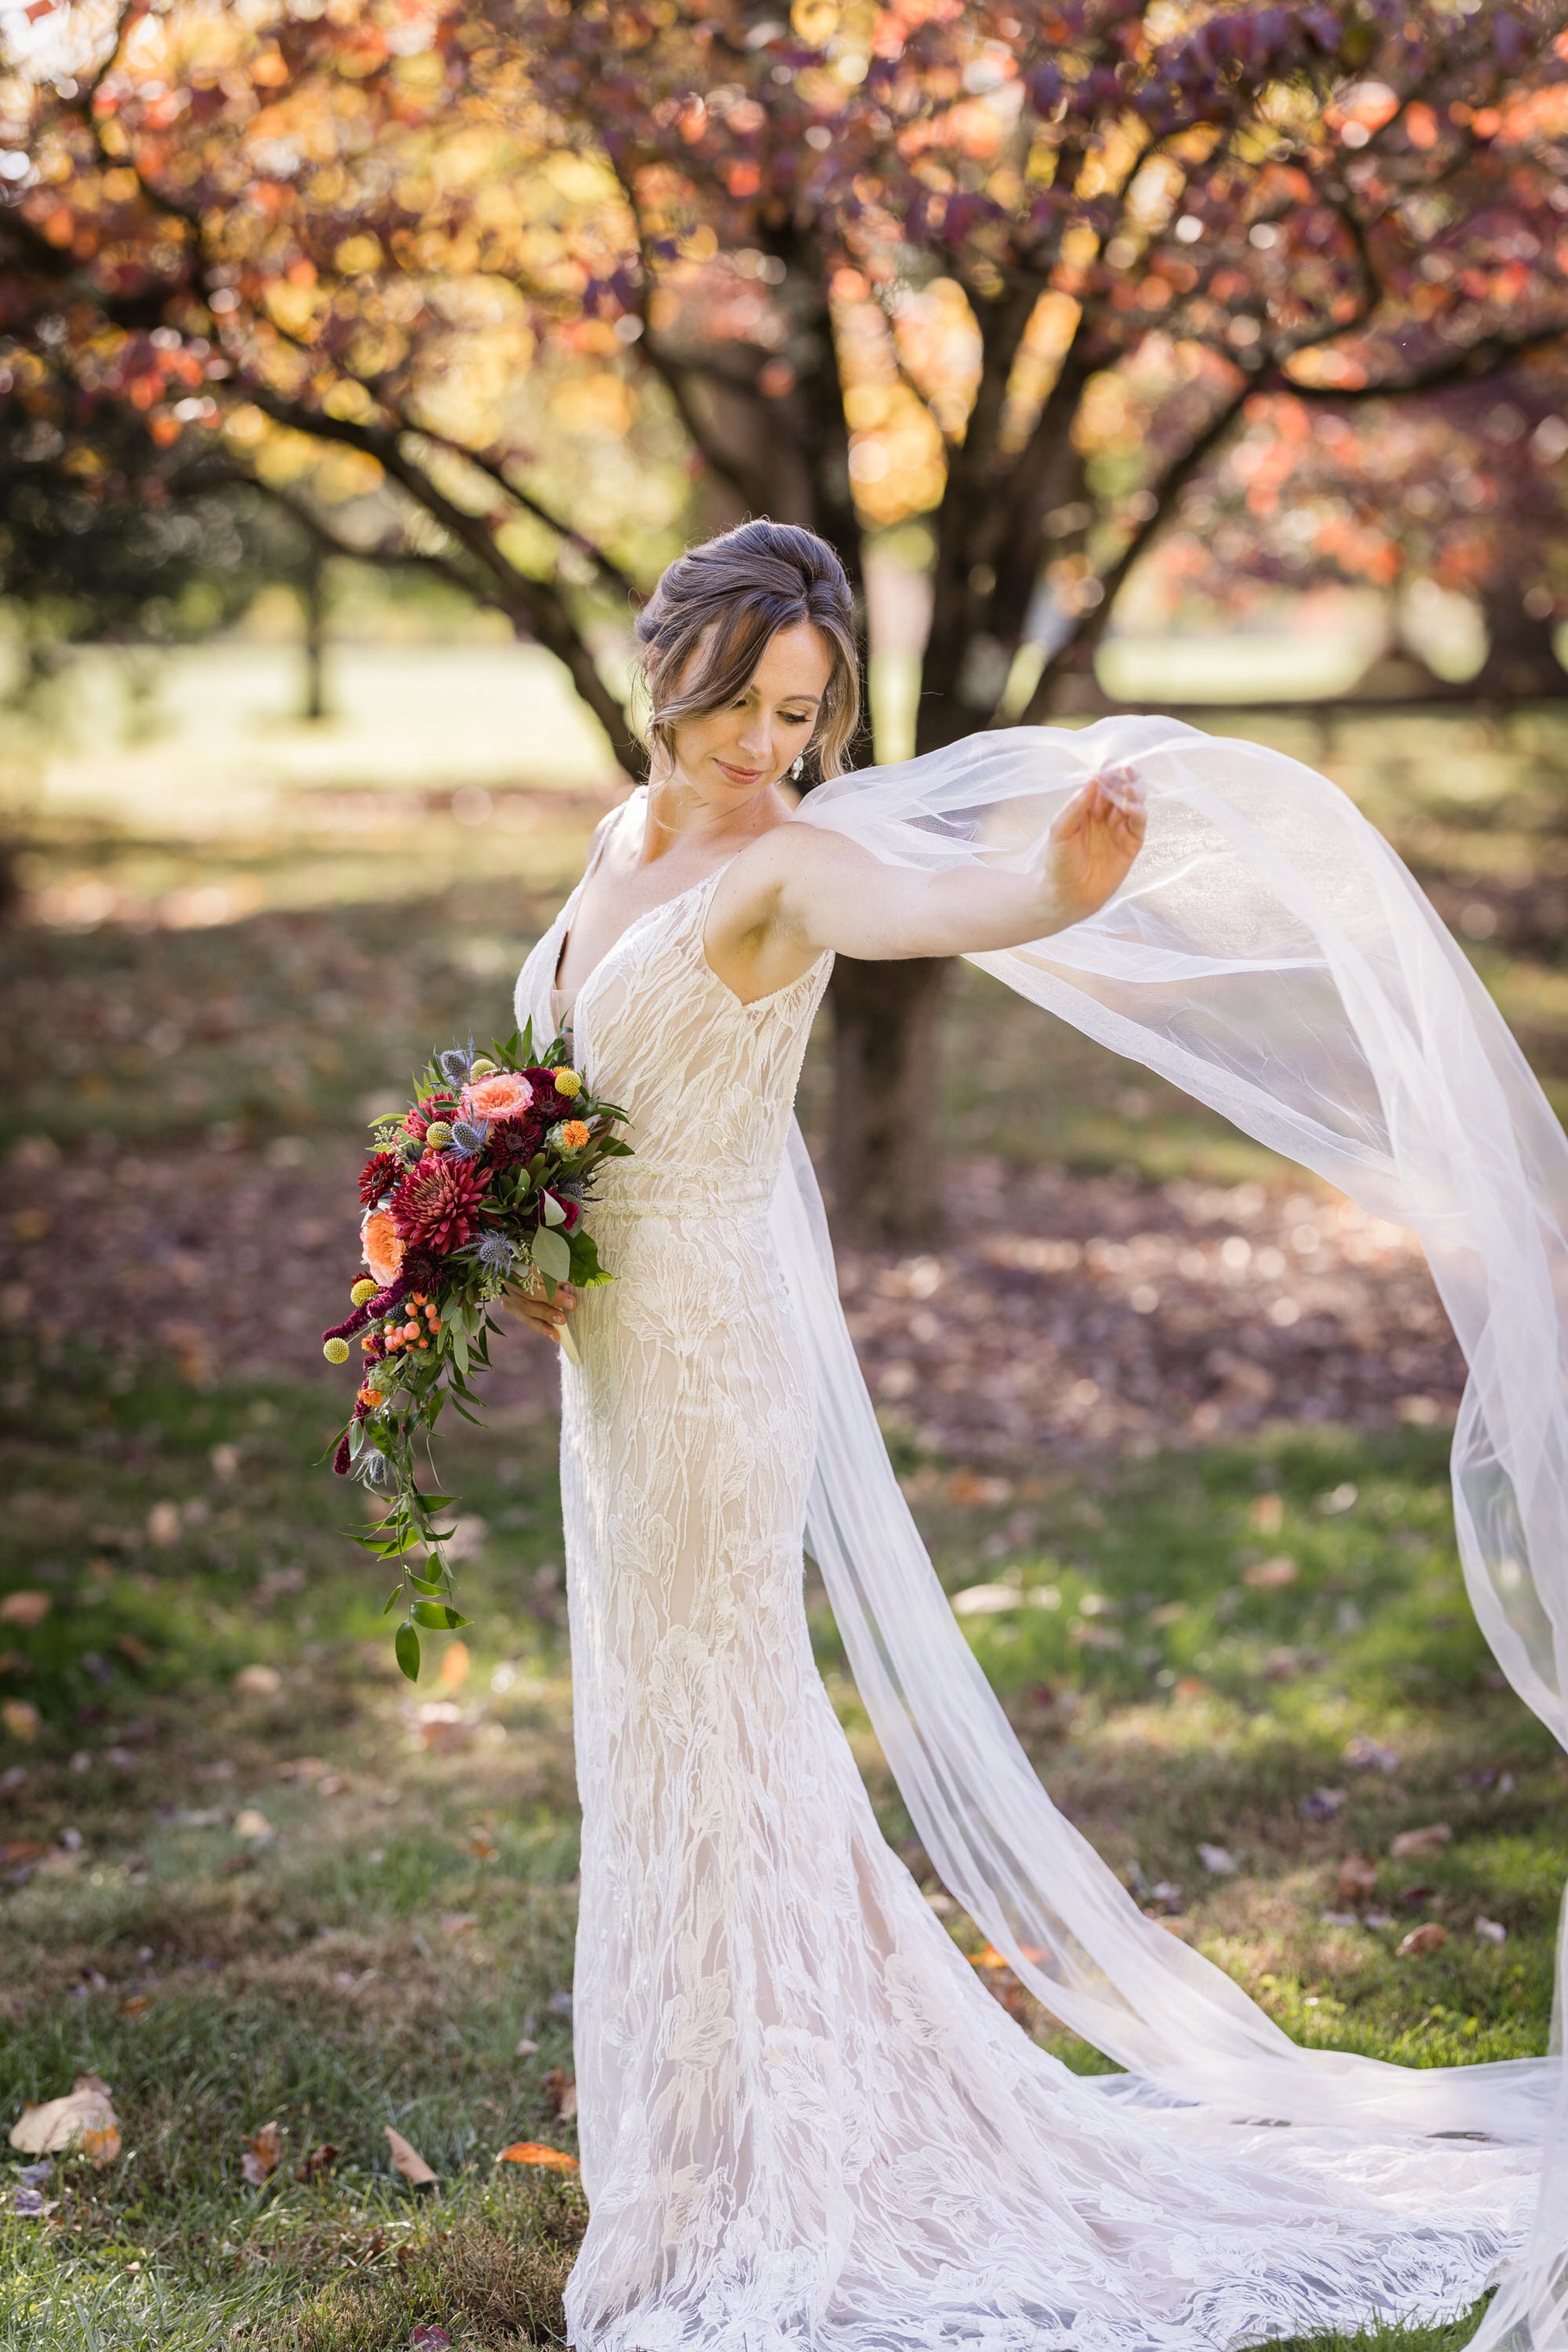 Waltz Length Veil Wedding Simple Tulle Bridal Veils Needed